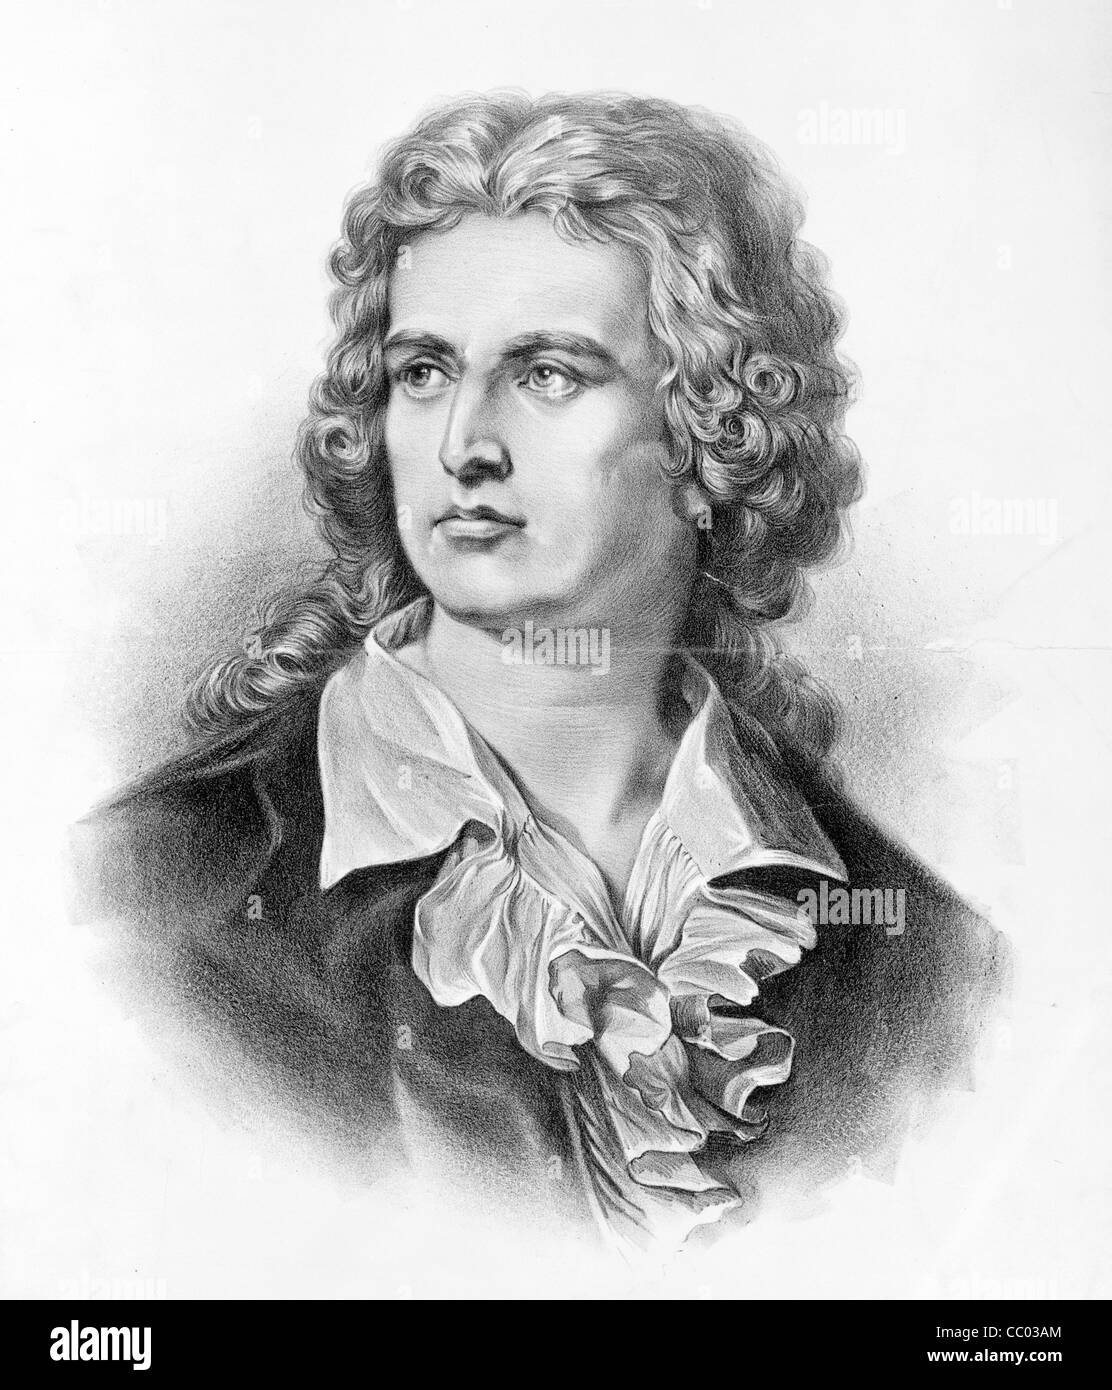 Johann Christoph Friedrich von Schiller, deutscher Dichter, Philosoph, Historiker und Dramatiker. Stockfoto